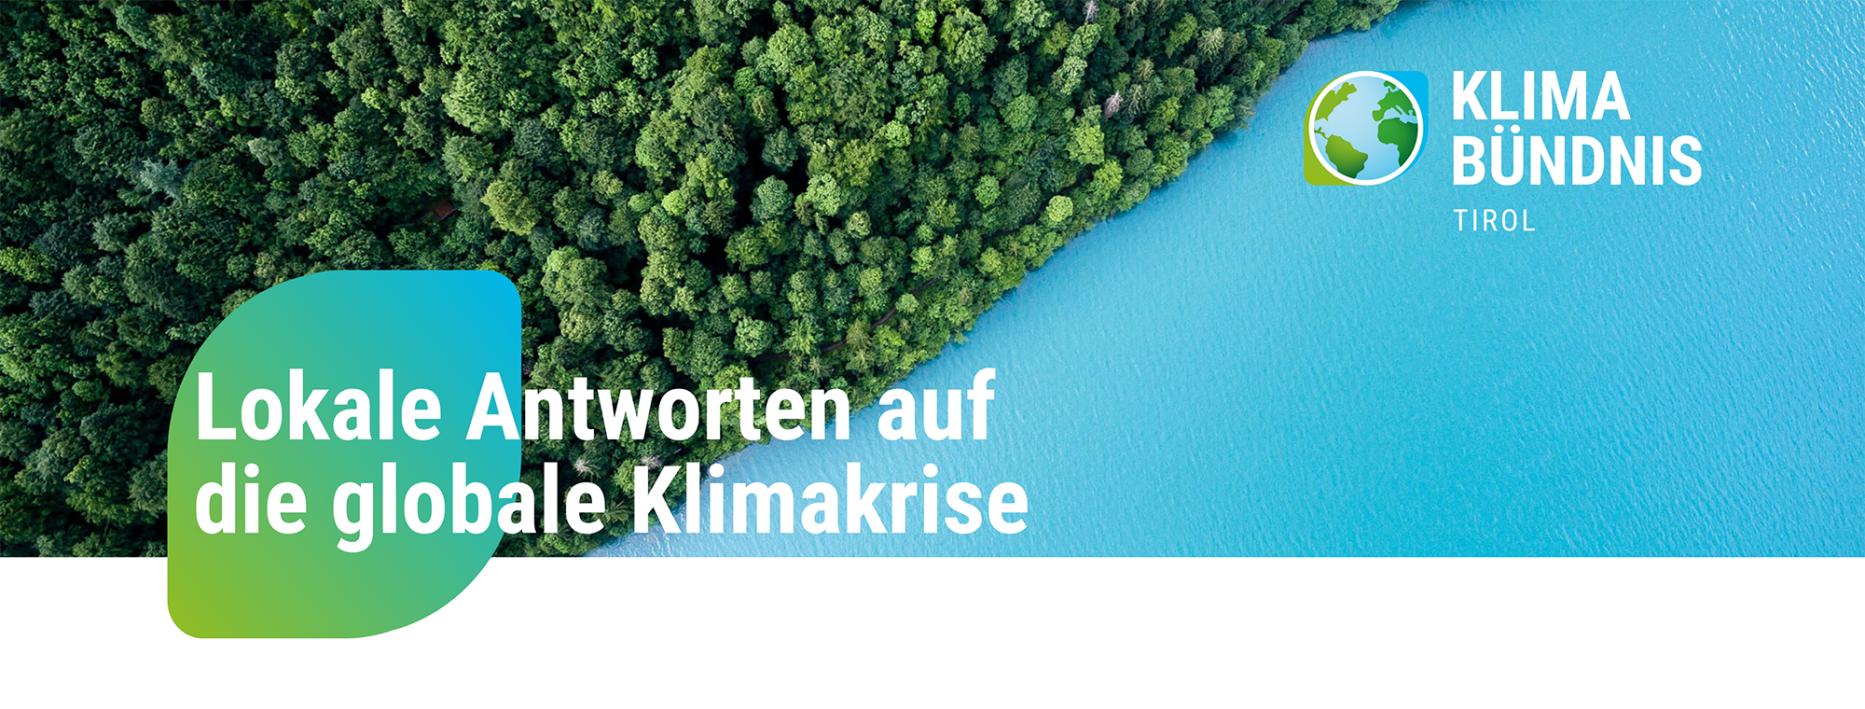 Newsletter Header Klimabündnis Tirol Lokale Antworten auf die globale Klimakrise